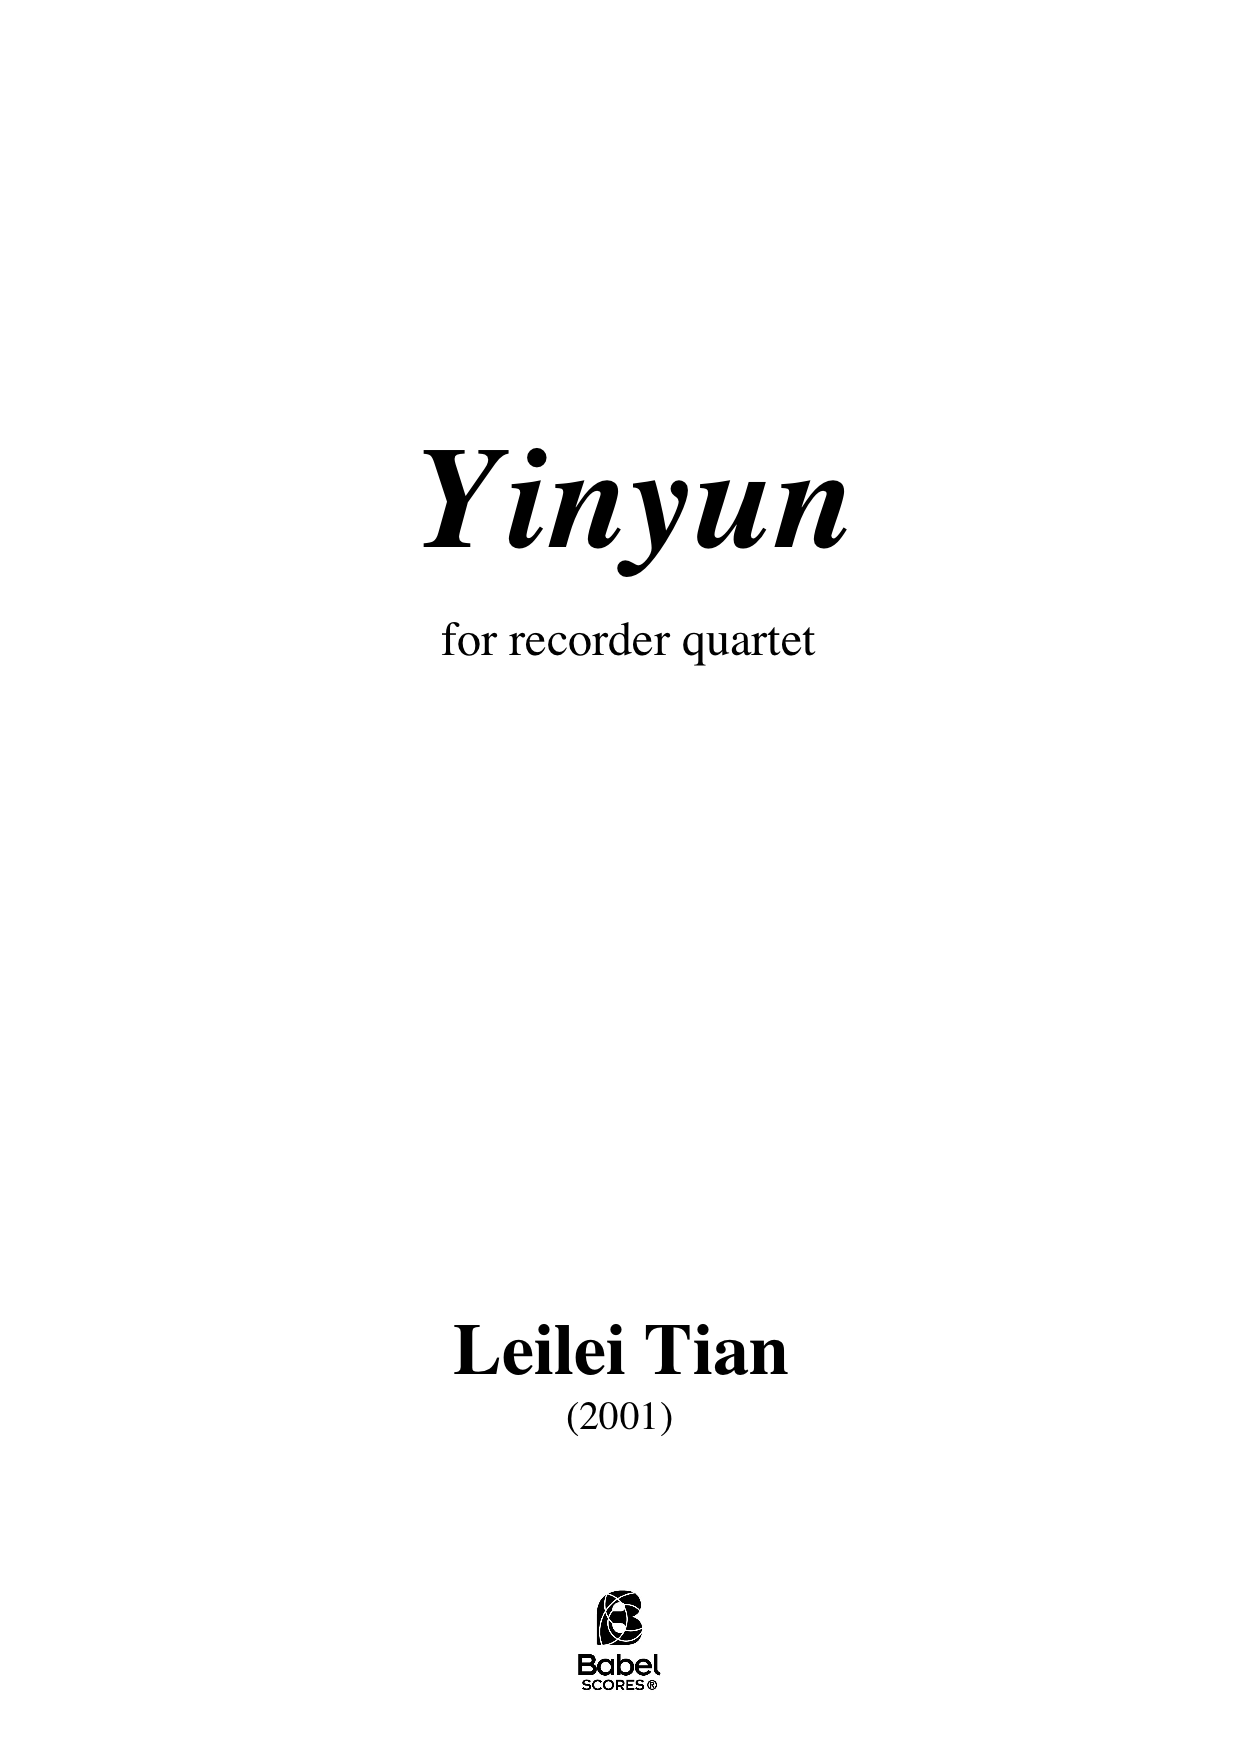 Yinyun score A4 z 1 01